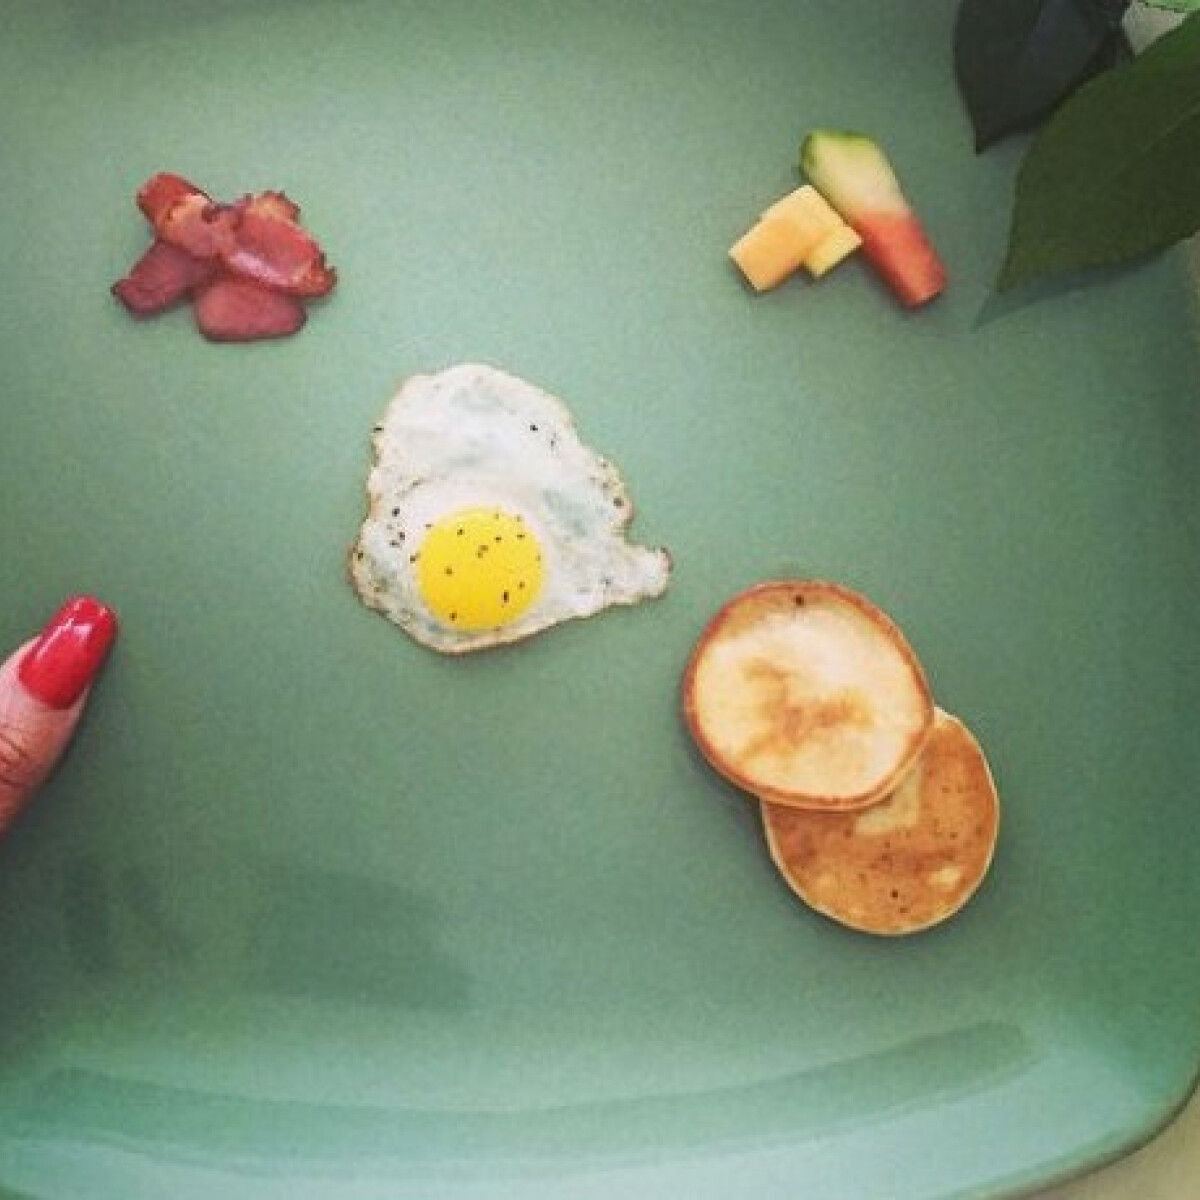 Így néz ki Rihanna reggelije?